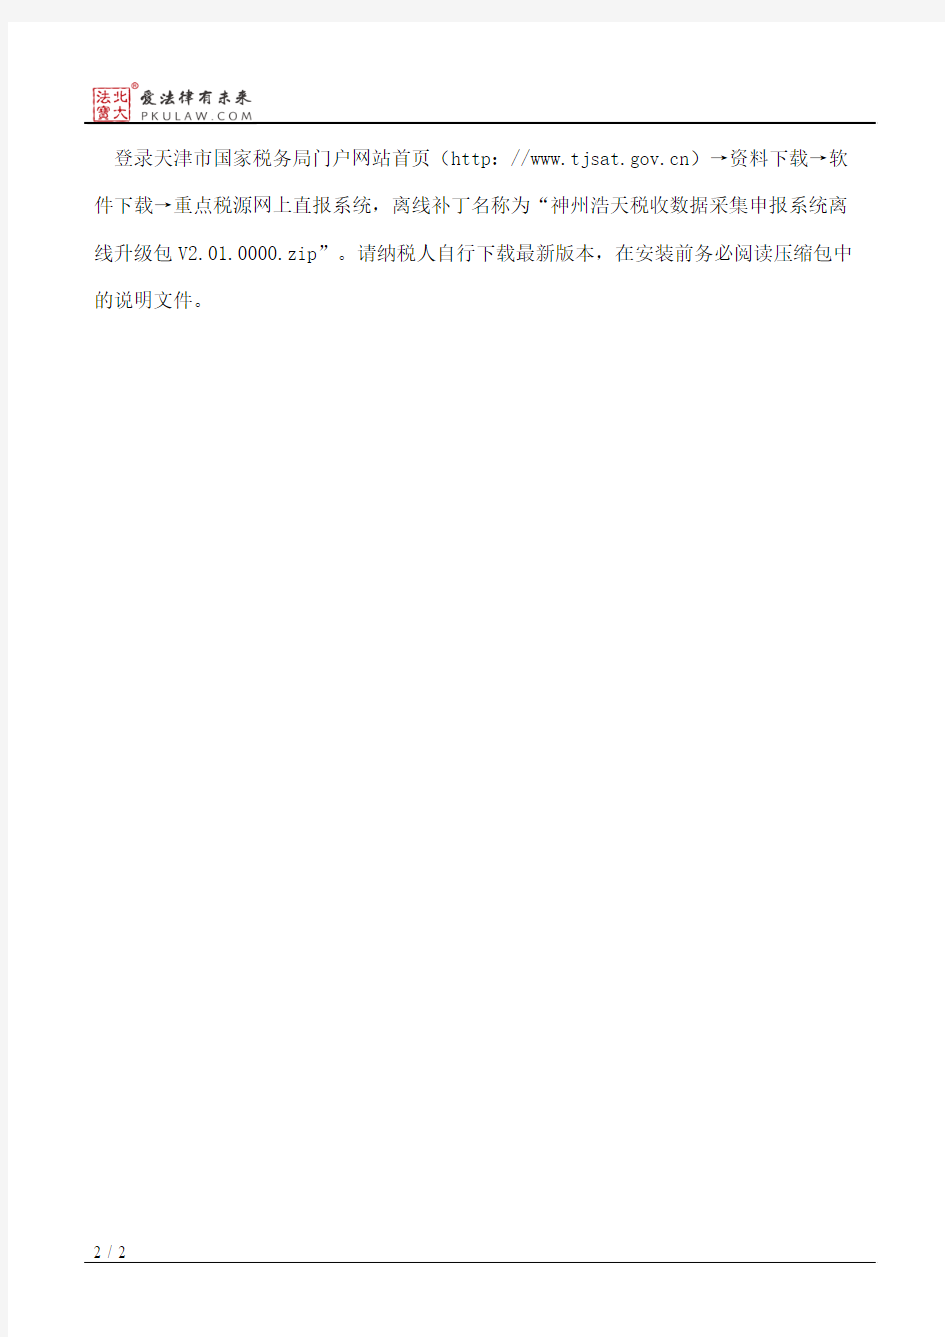 天津市国家税务局关于重点税源企业网上直报系统升级的通知(2017)